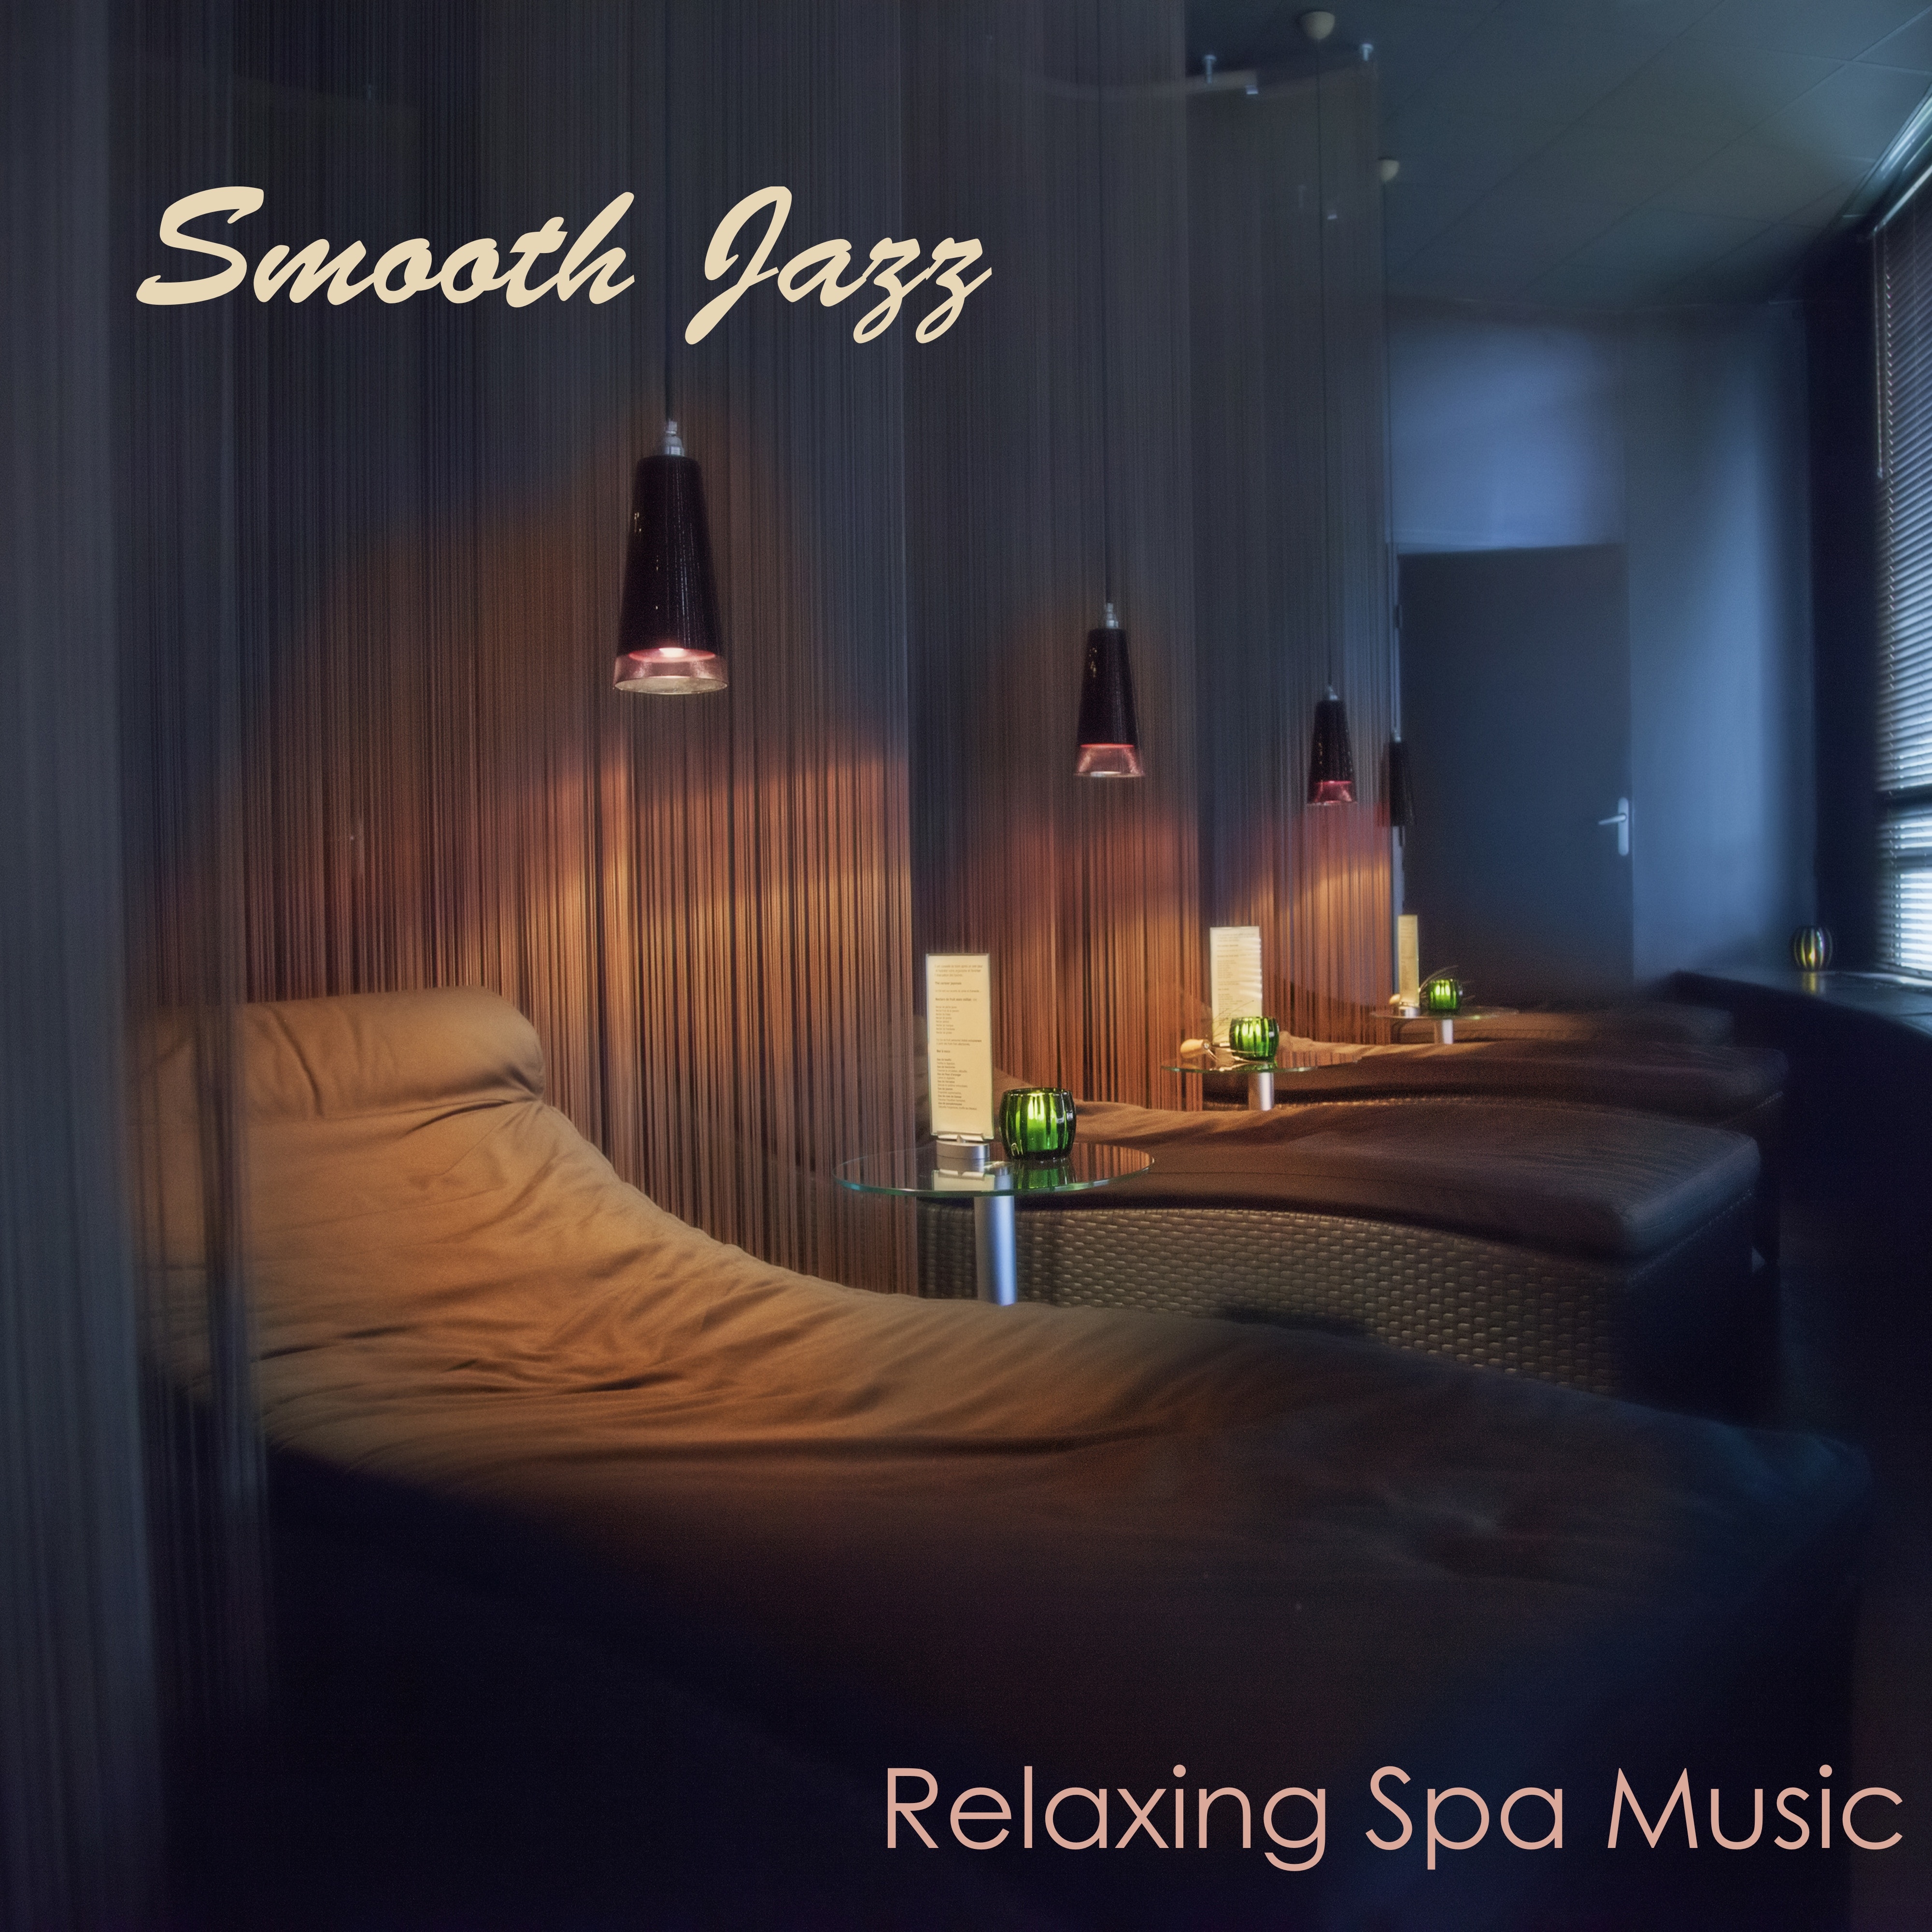 Relaxing Massage Music